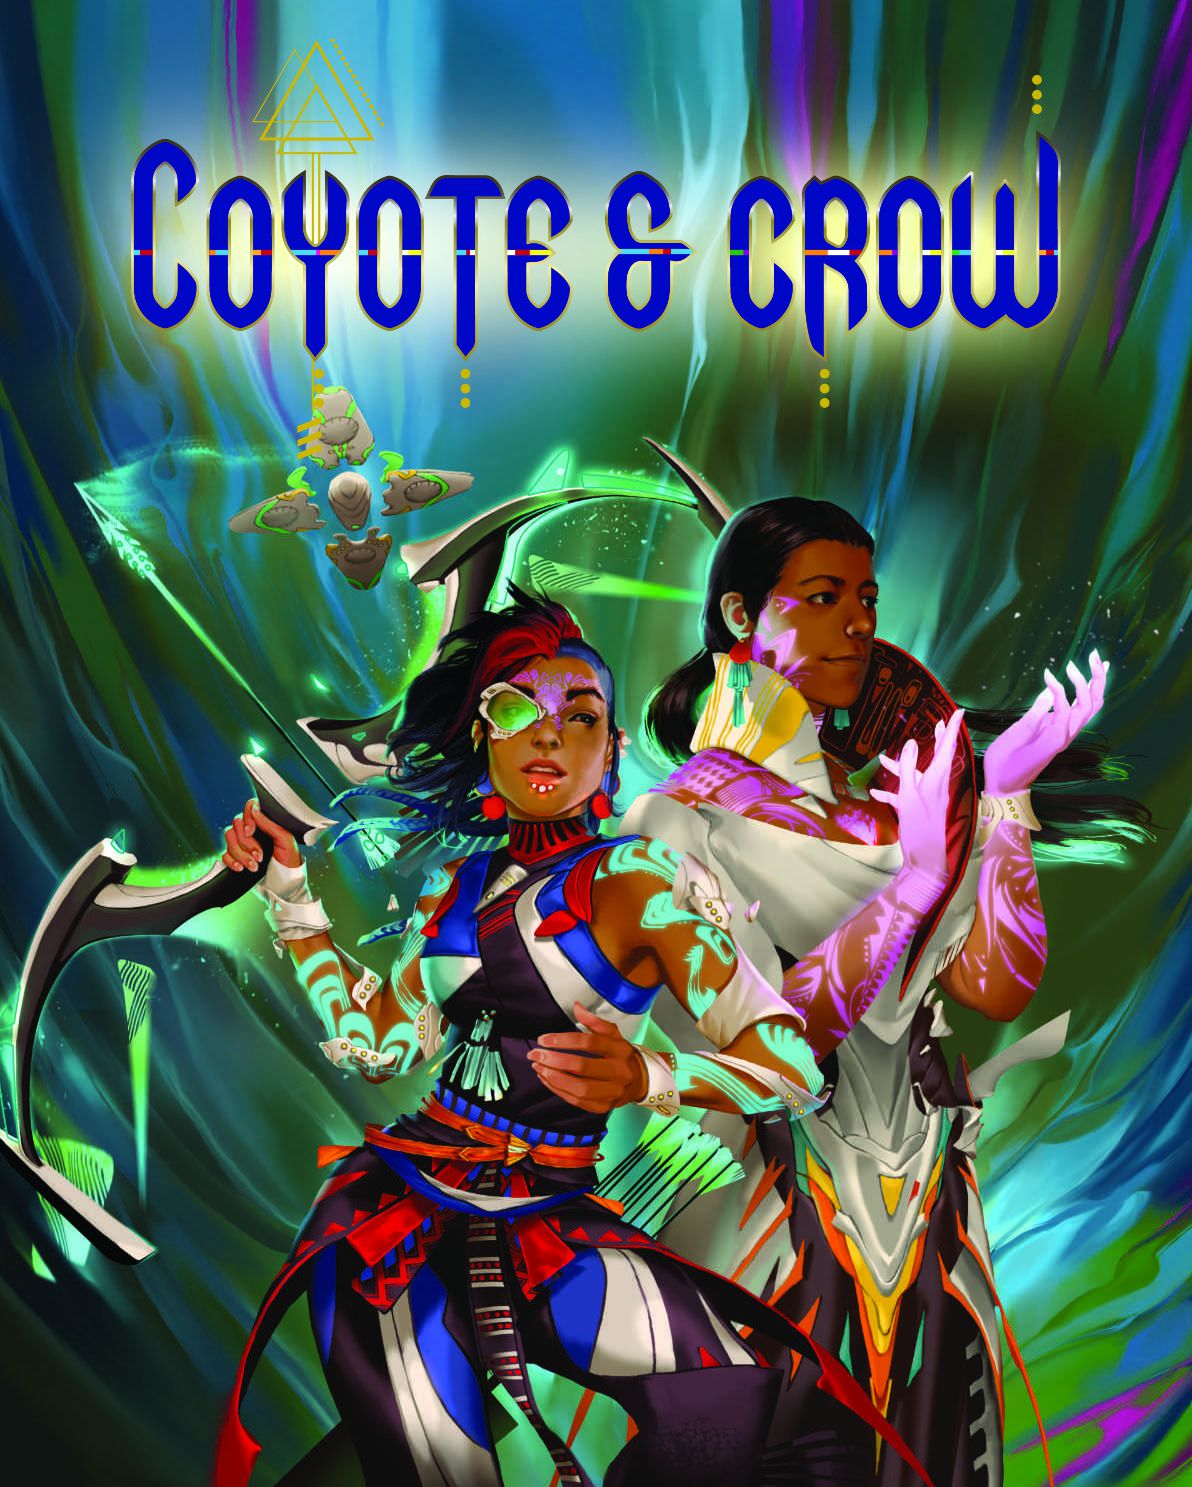 Cover art per Coyote & Crow che mostra discendenti di nativi americani precolombiani vestiti con armature colorate.